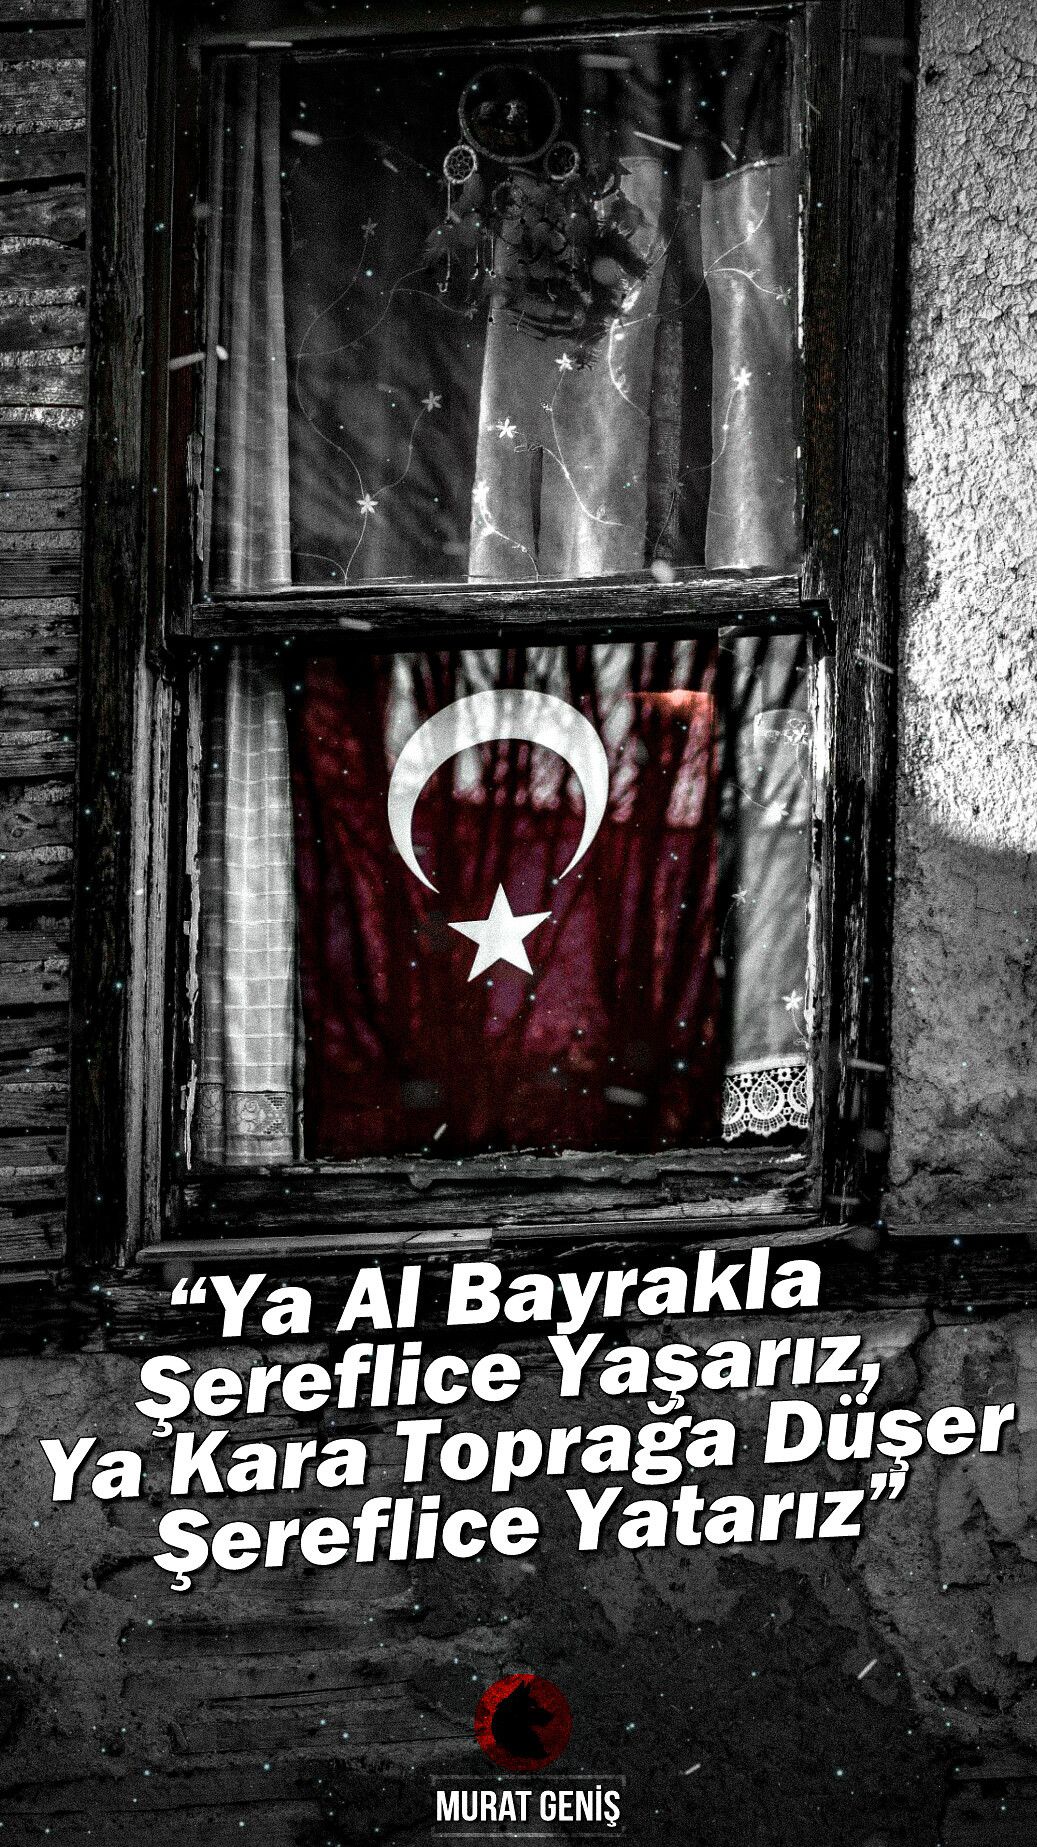 türkçü wallpaper,poster,ghost,font,photo caption,fictional character